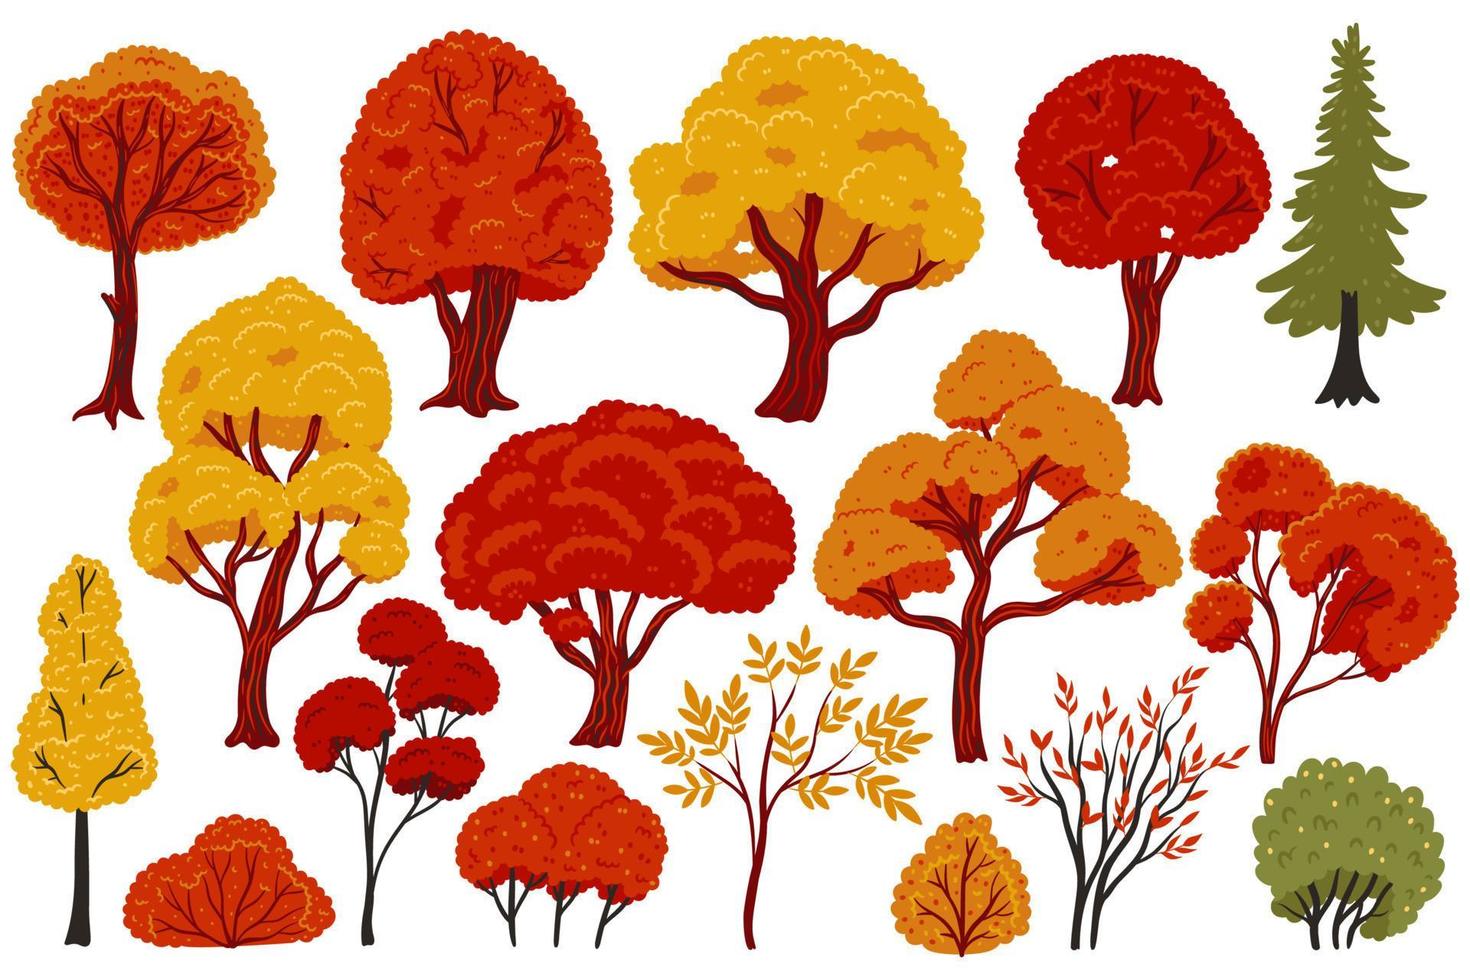 Bäume und Sträucher im Herbst isoliert auf weißem Hintergrund. Vektorgrafiken. vektor